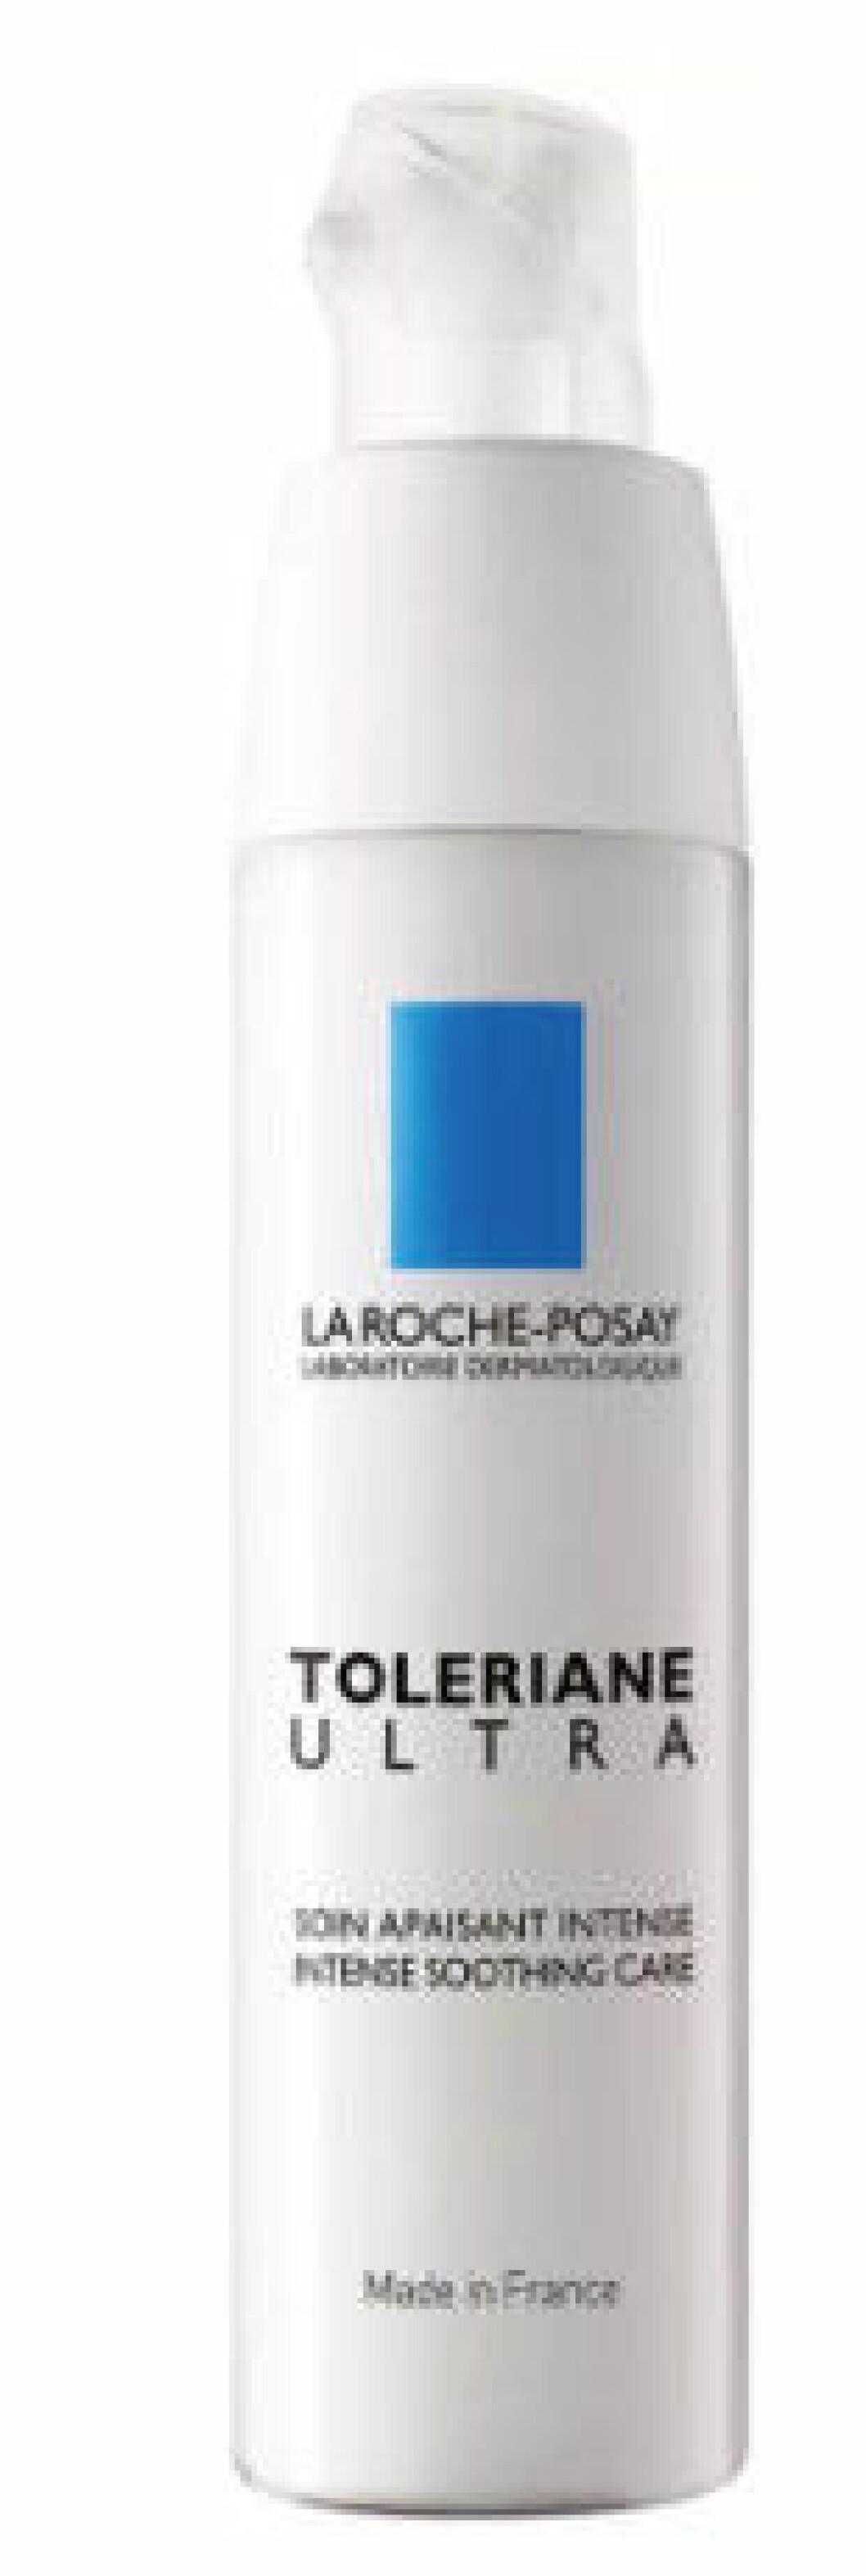 Toleriane Ultra är en creme för känslig hud